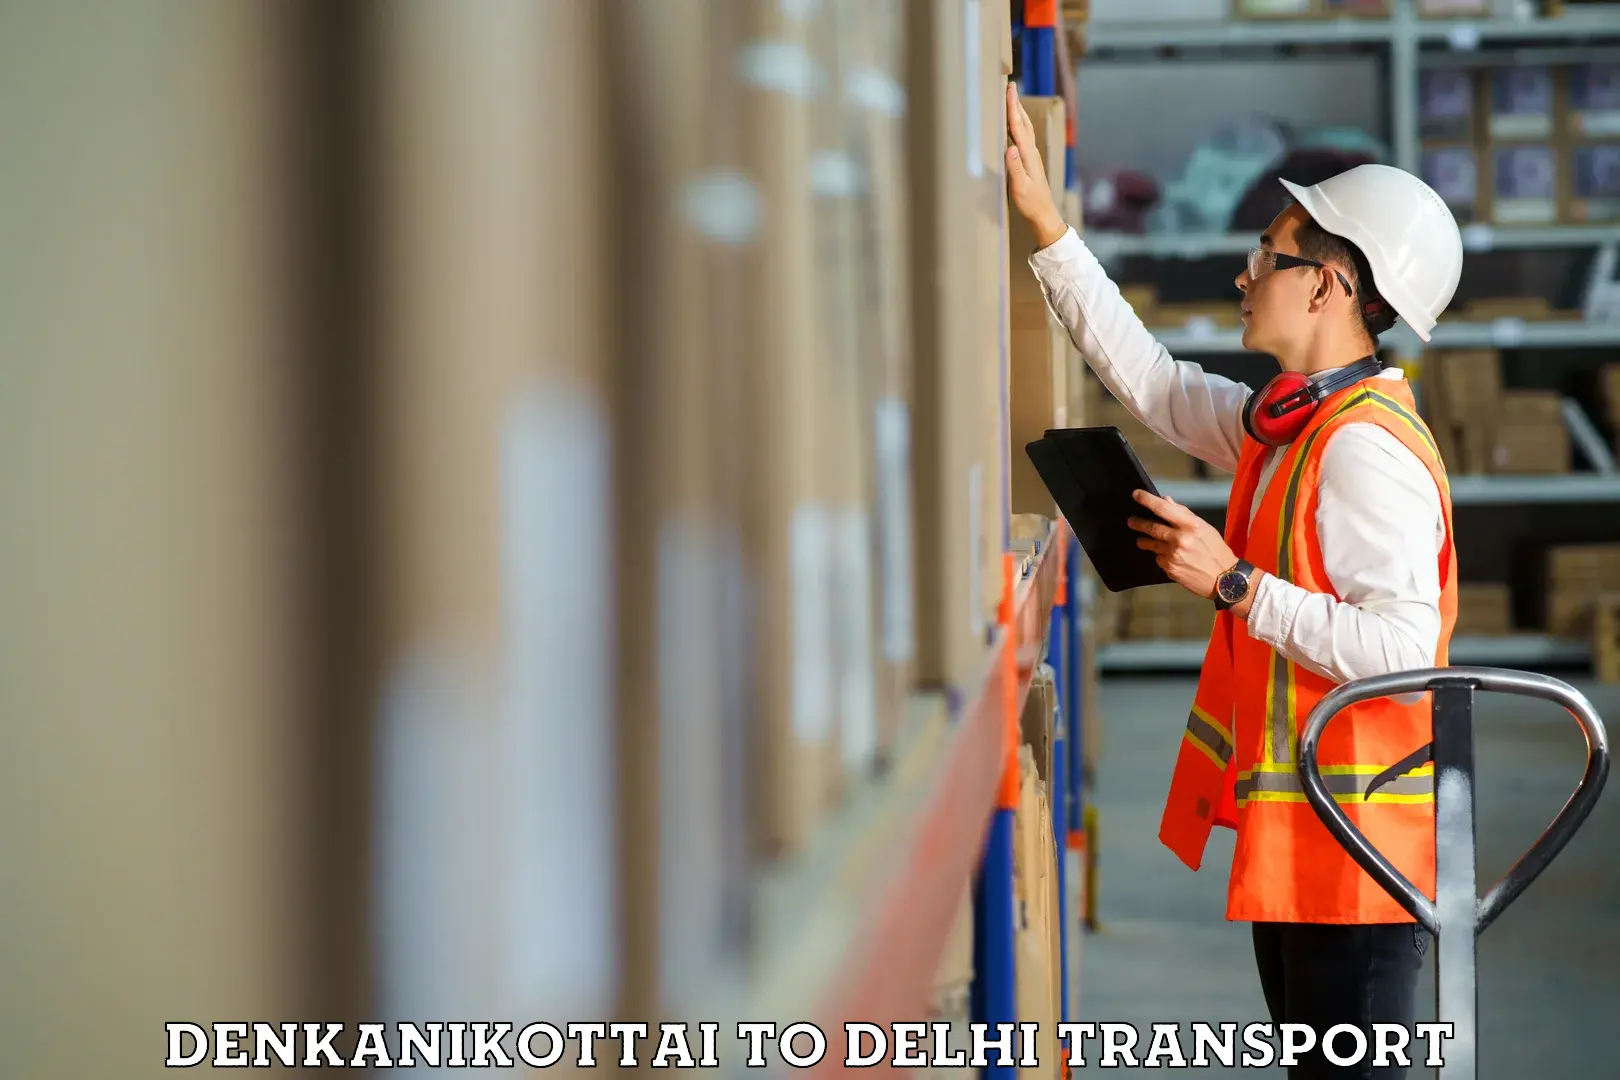 Express transport services Denkanikottai to NIT Delhi